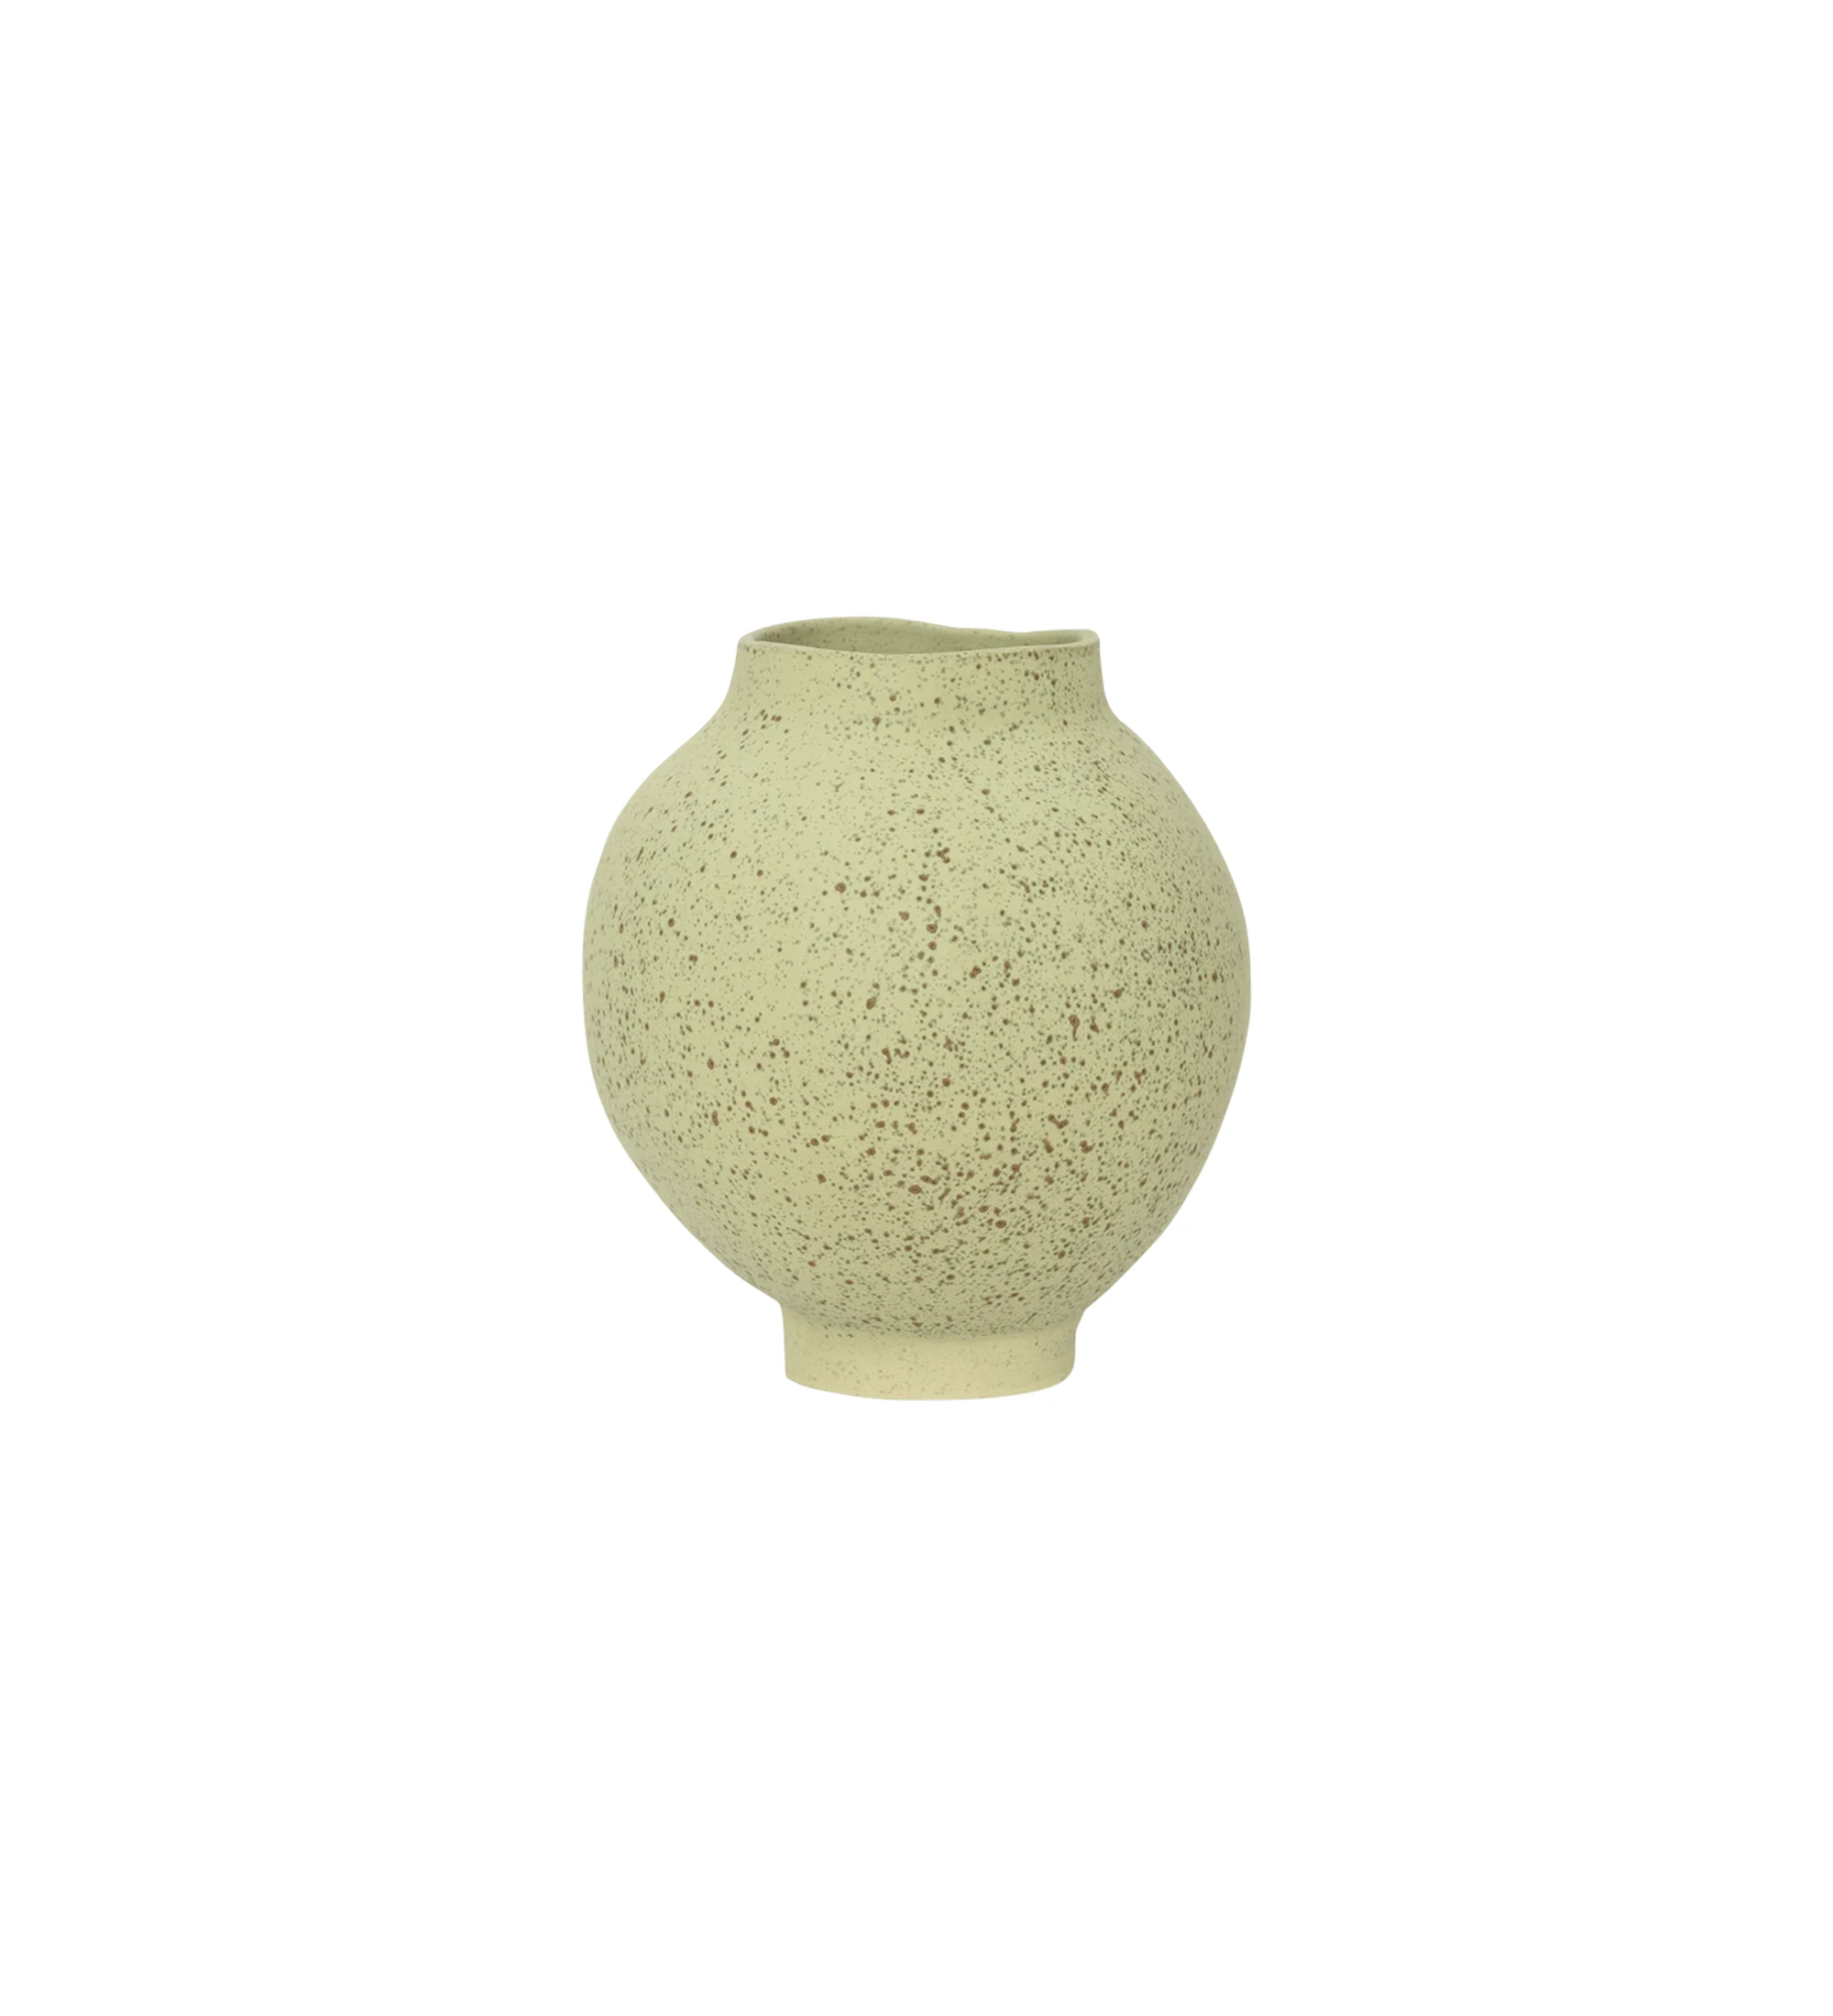 Jarrón hecho a mano con estructura cerámica, tiene un acabado seco ultra mate con refinadas manchas verdes rubias.